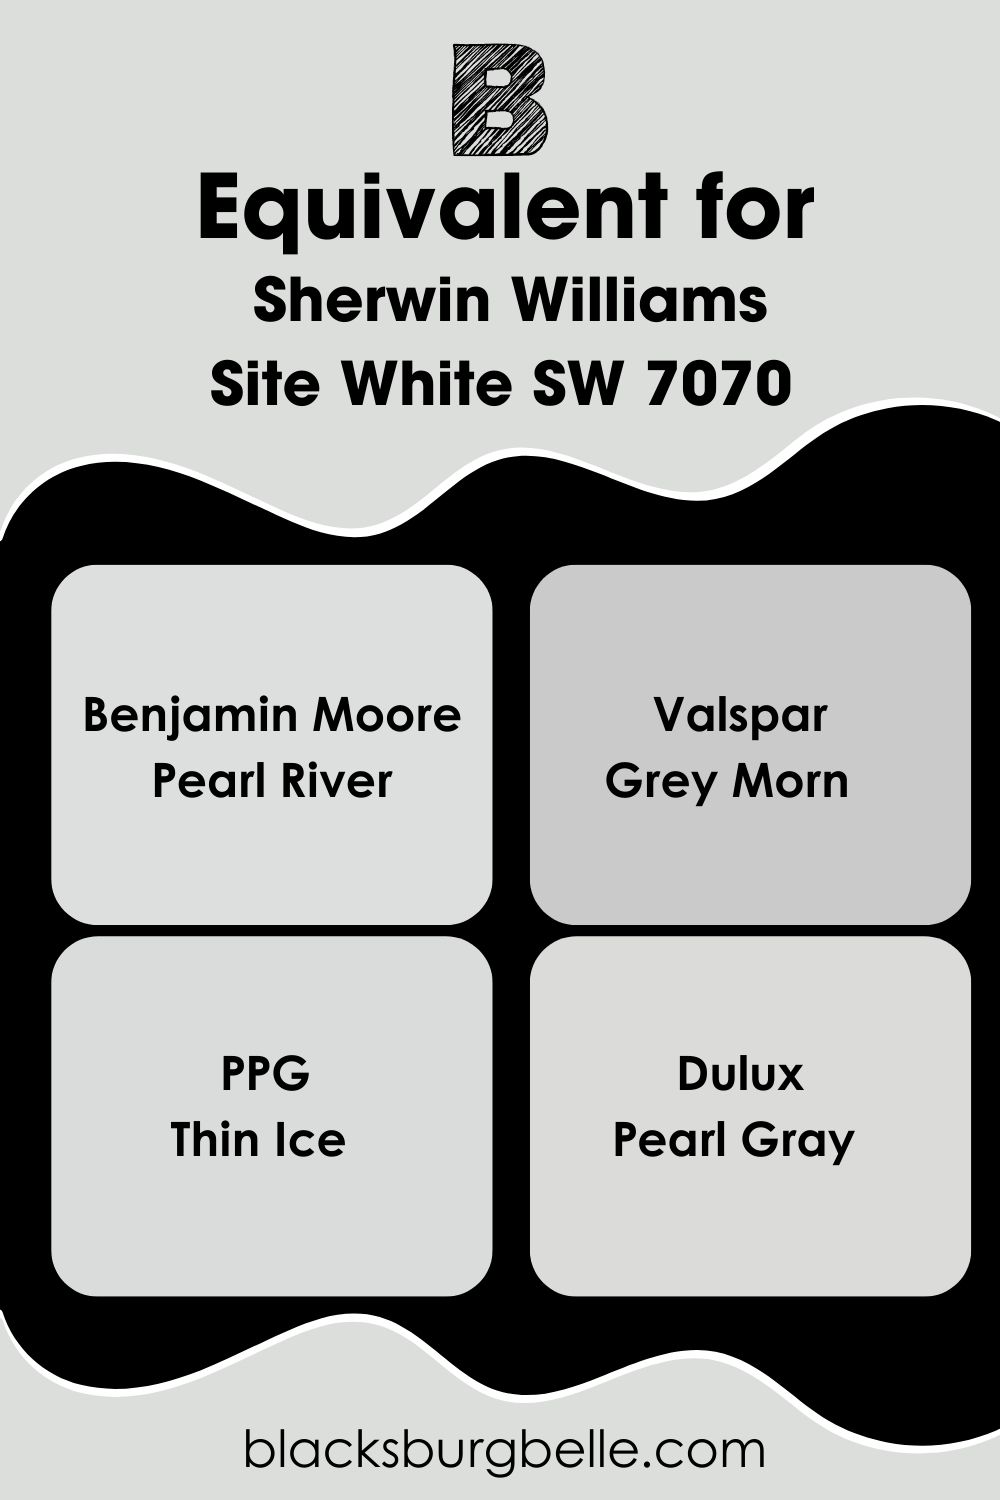 Site White SW 7070 (9)